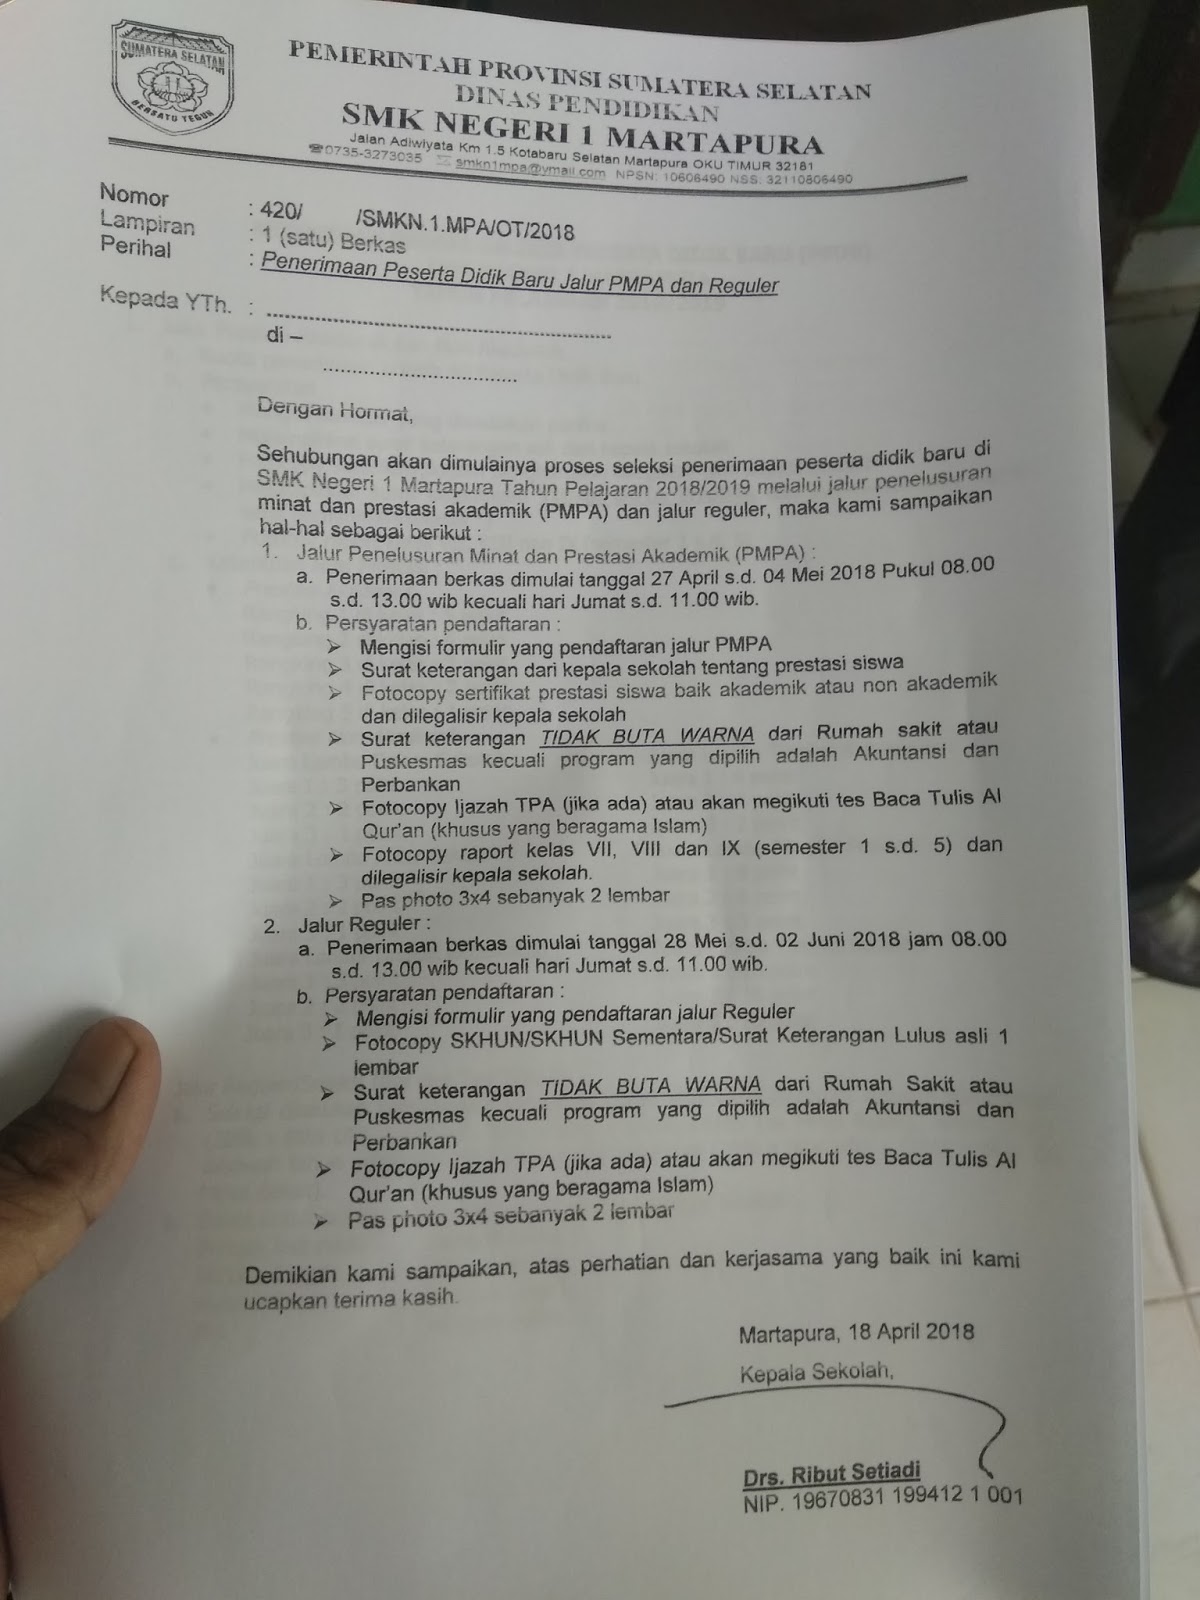 Syarat syarat Penerimaan Siswa Baru SMK Negeri 1 Martapura